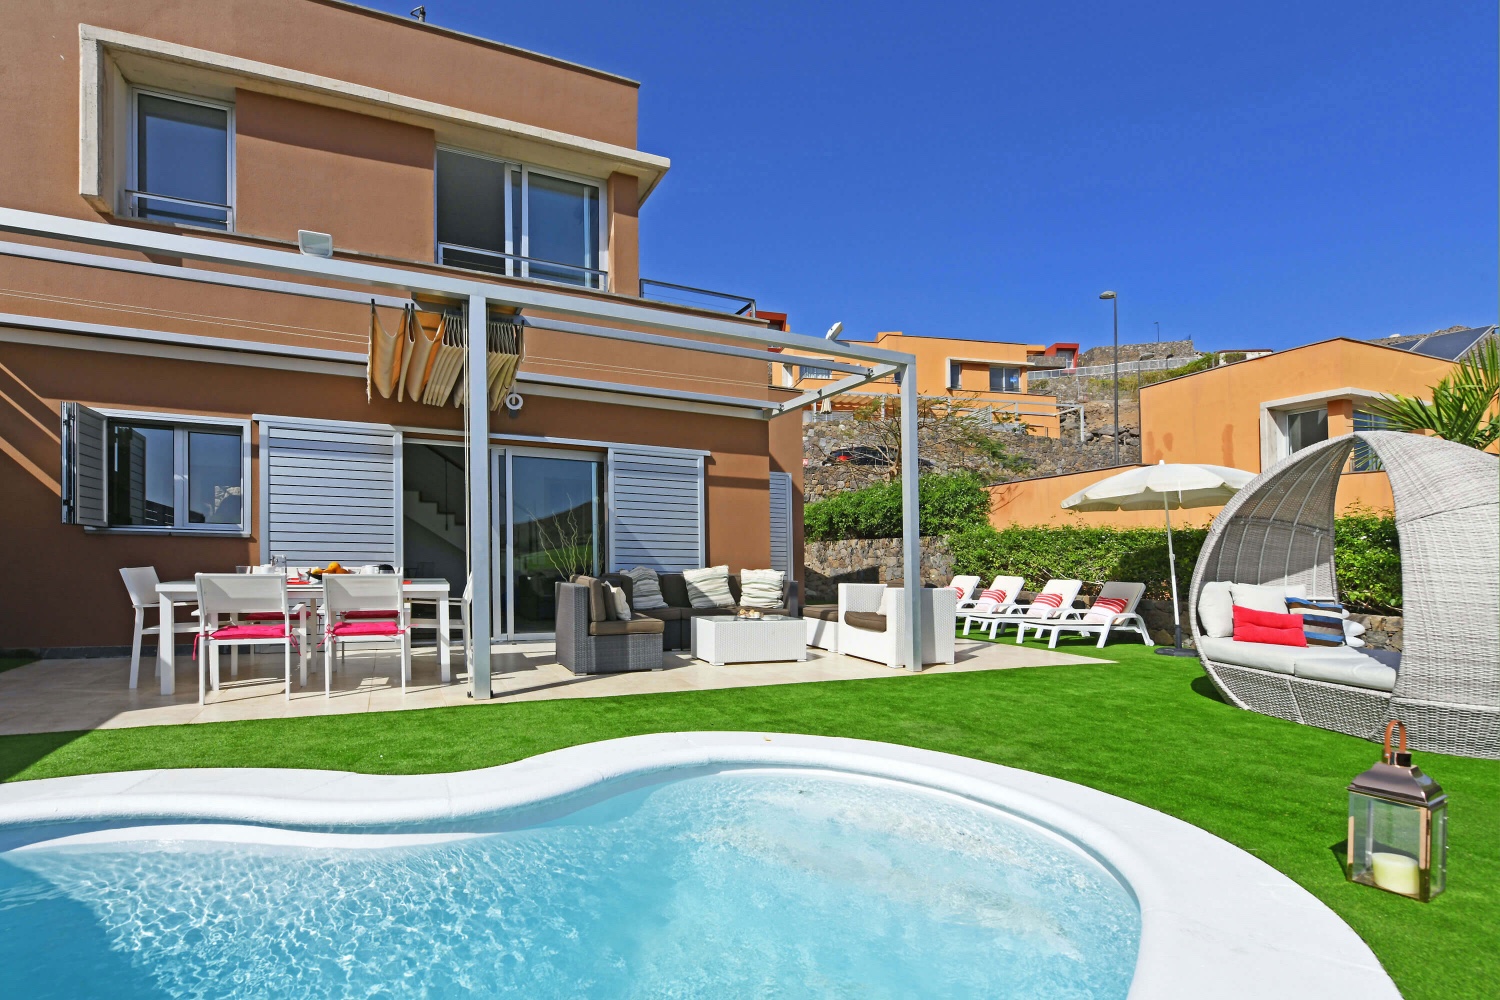 Schönes Haus mit hellen Innenräumen und großem Garten, privatem Pool mit Solarheizung und herrlichem Blick auf den Golfplatz